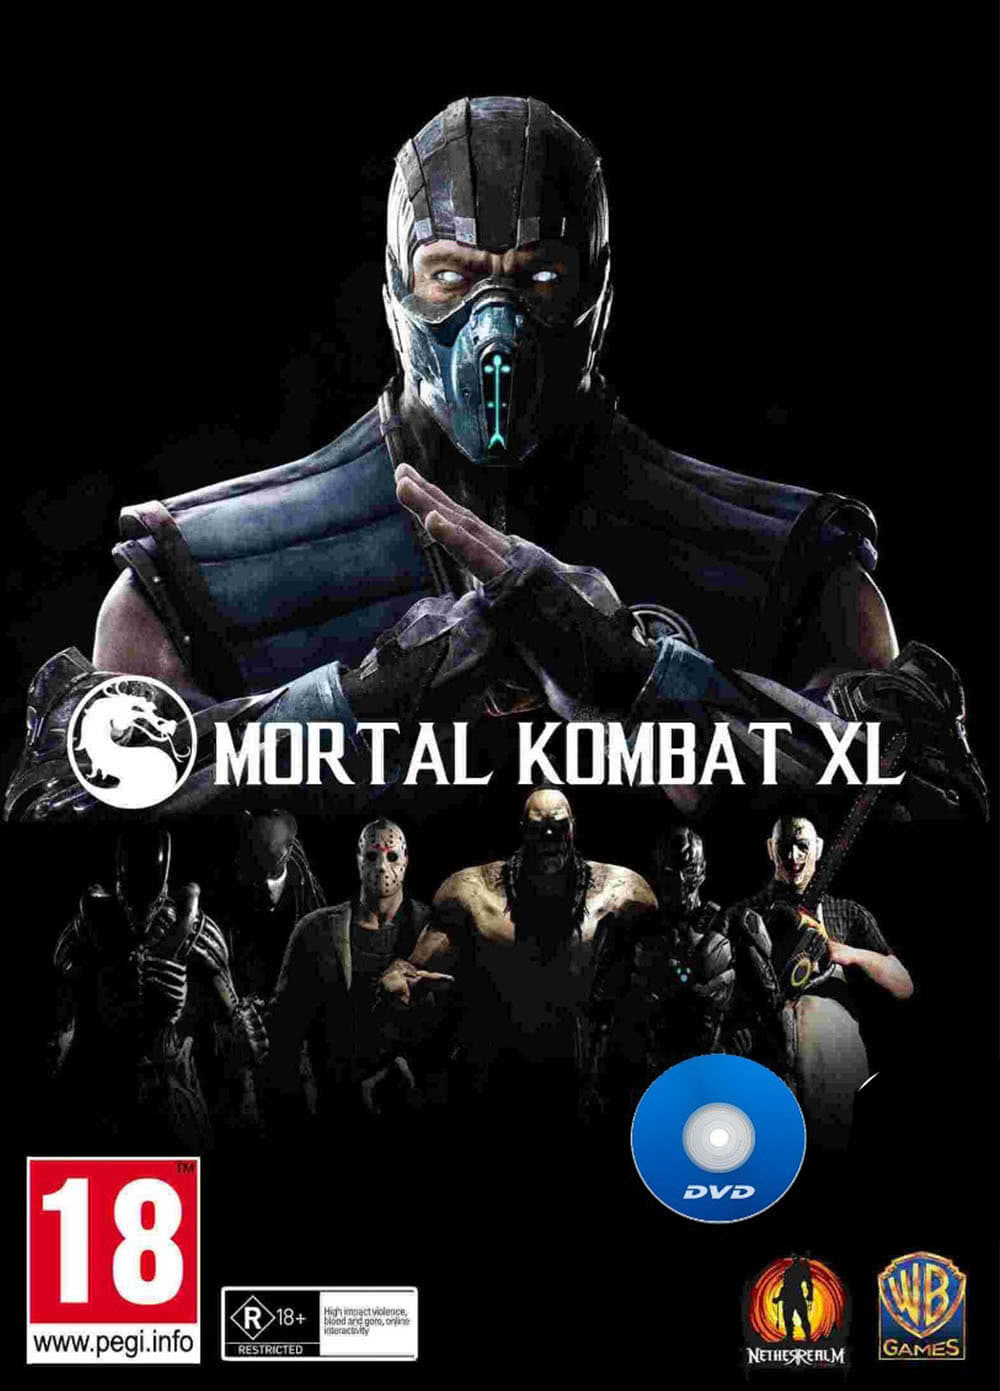 jaquette reduite de Mortal Kombat XL sur PC